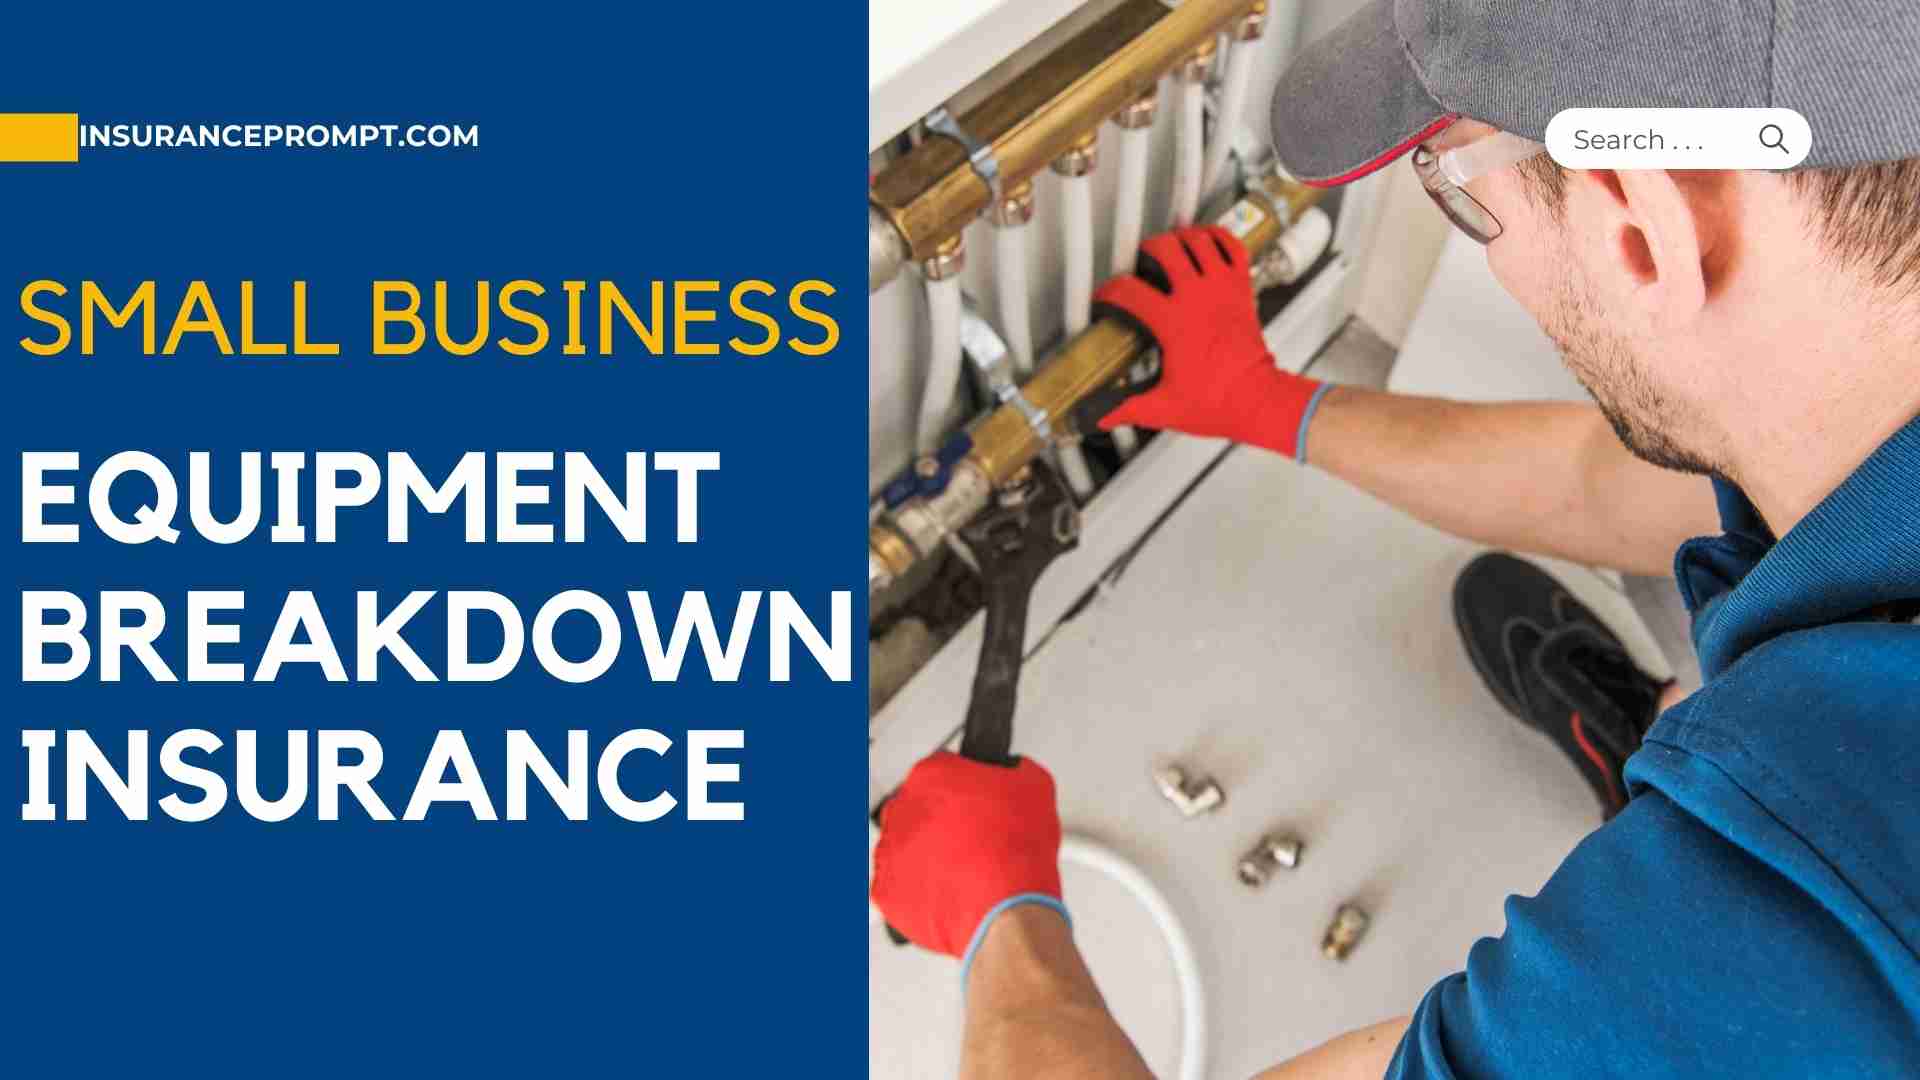 Small Business Equipment Breakdown Insurance: Full Coverage